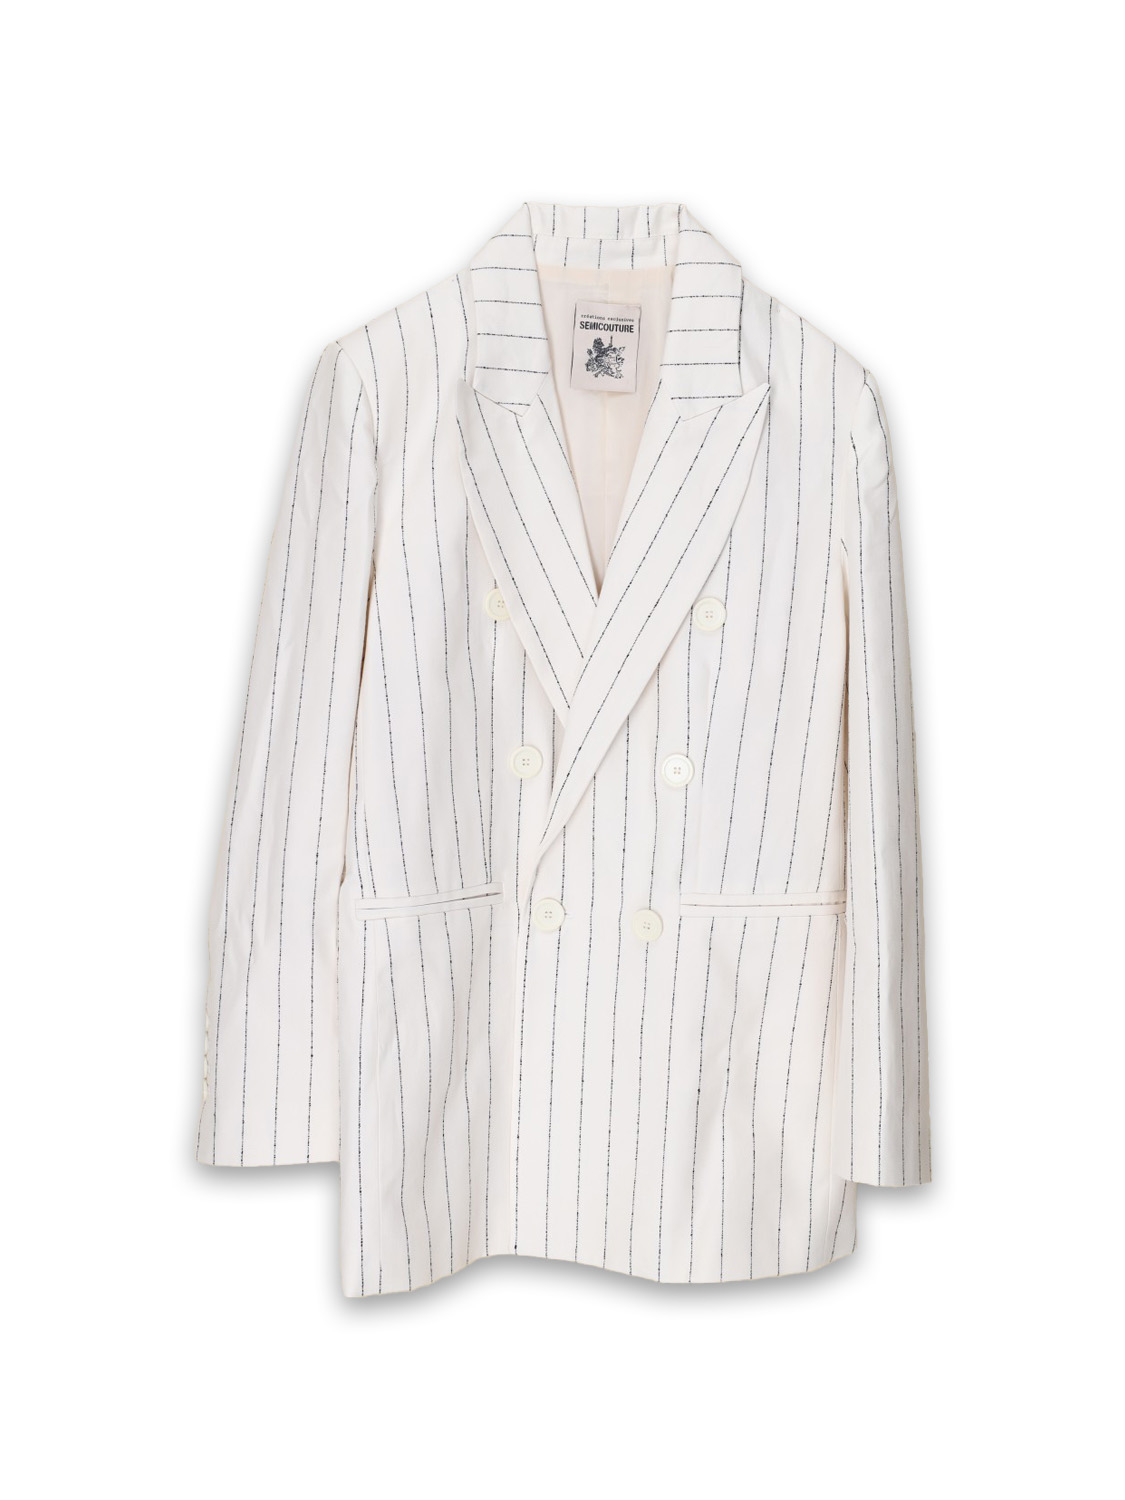 Cotton blazer with pinstripe pattern 